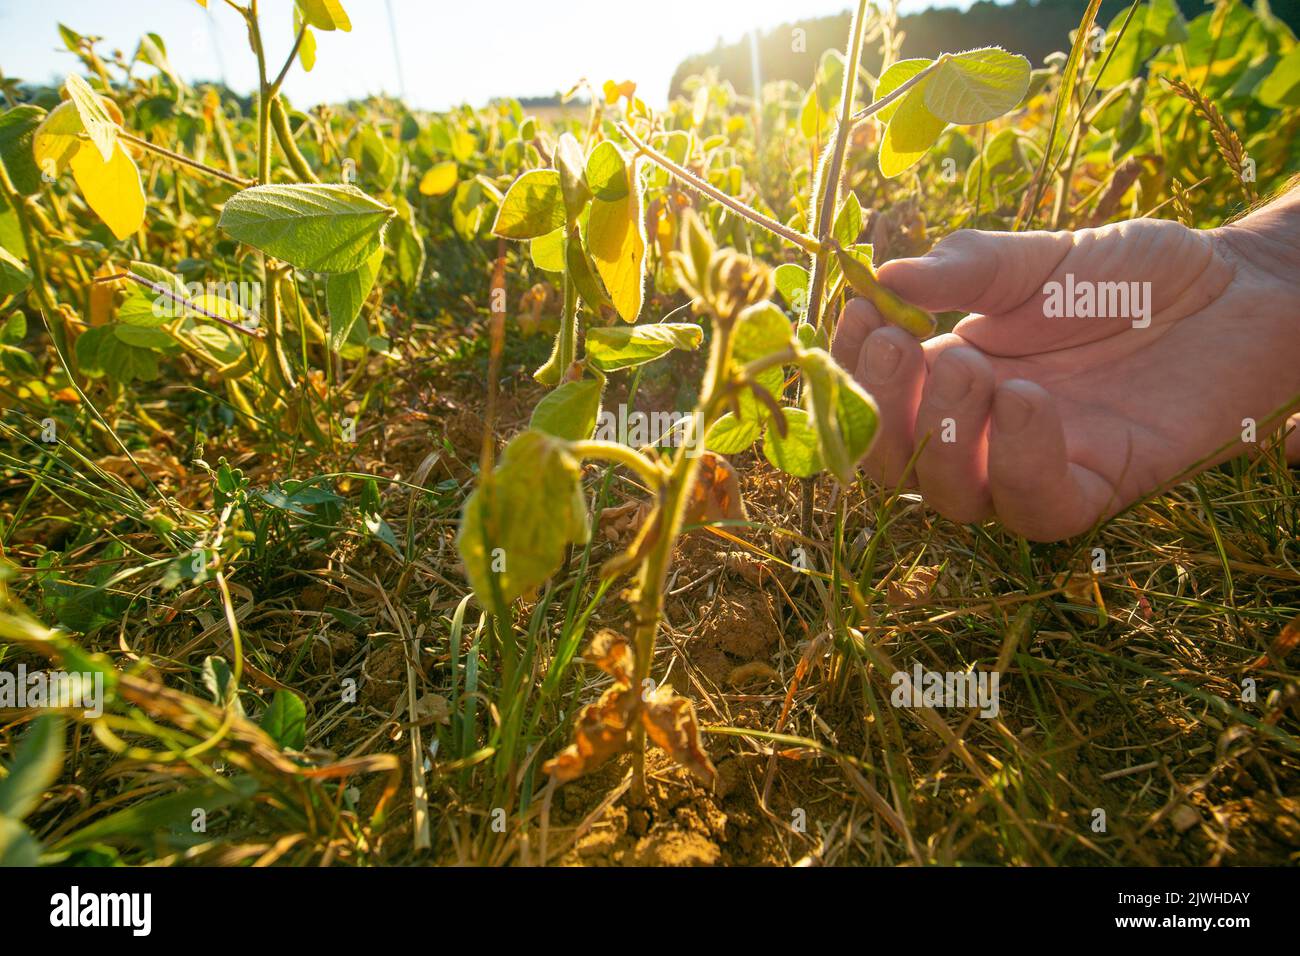 Sojabohnen-Ernte.Hände Inspektion einer Sojabohnenschote.Pods von reifen Sojabohnen in einer weiblichen Hand.Feld von reifen Sojabohnen.der Landwirt überprüft die Sojabohnen auf Reife Stockfoto